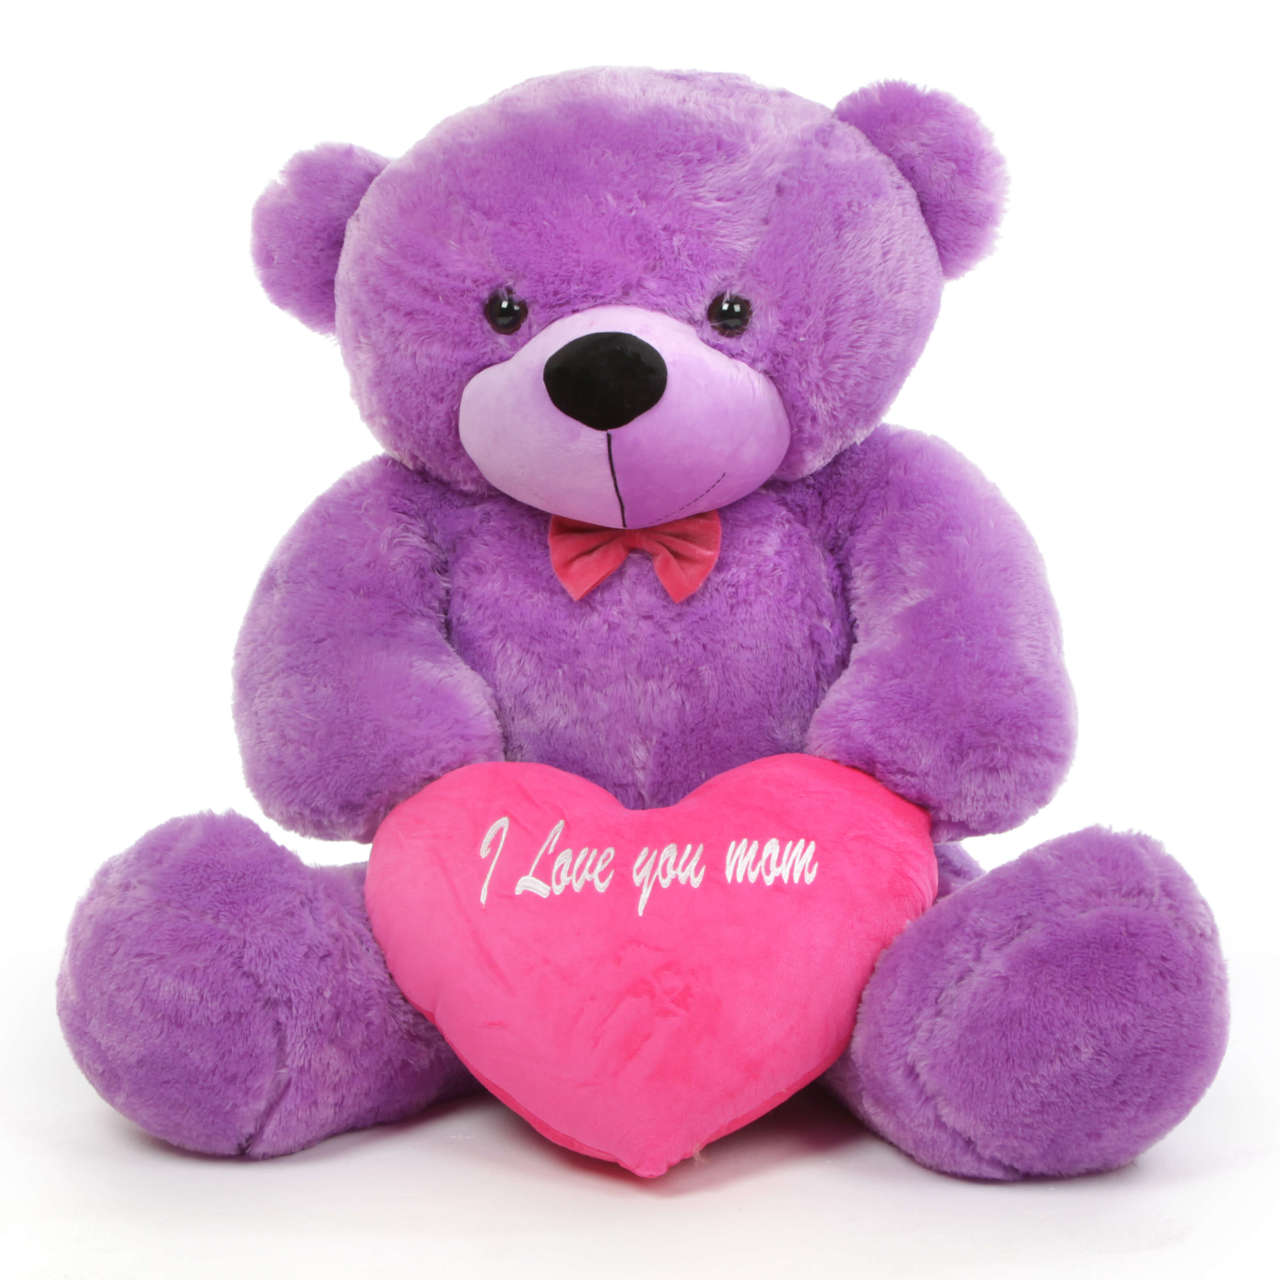 teddy bear with i love you heart